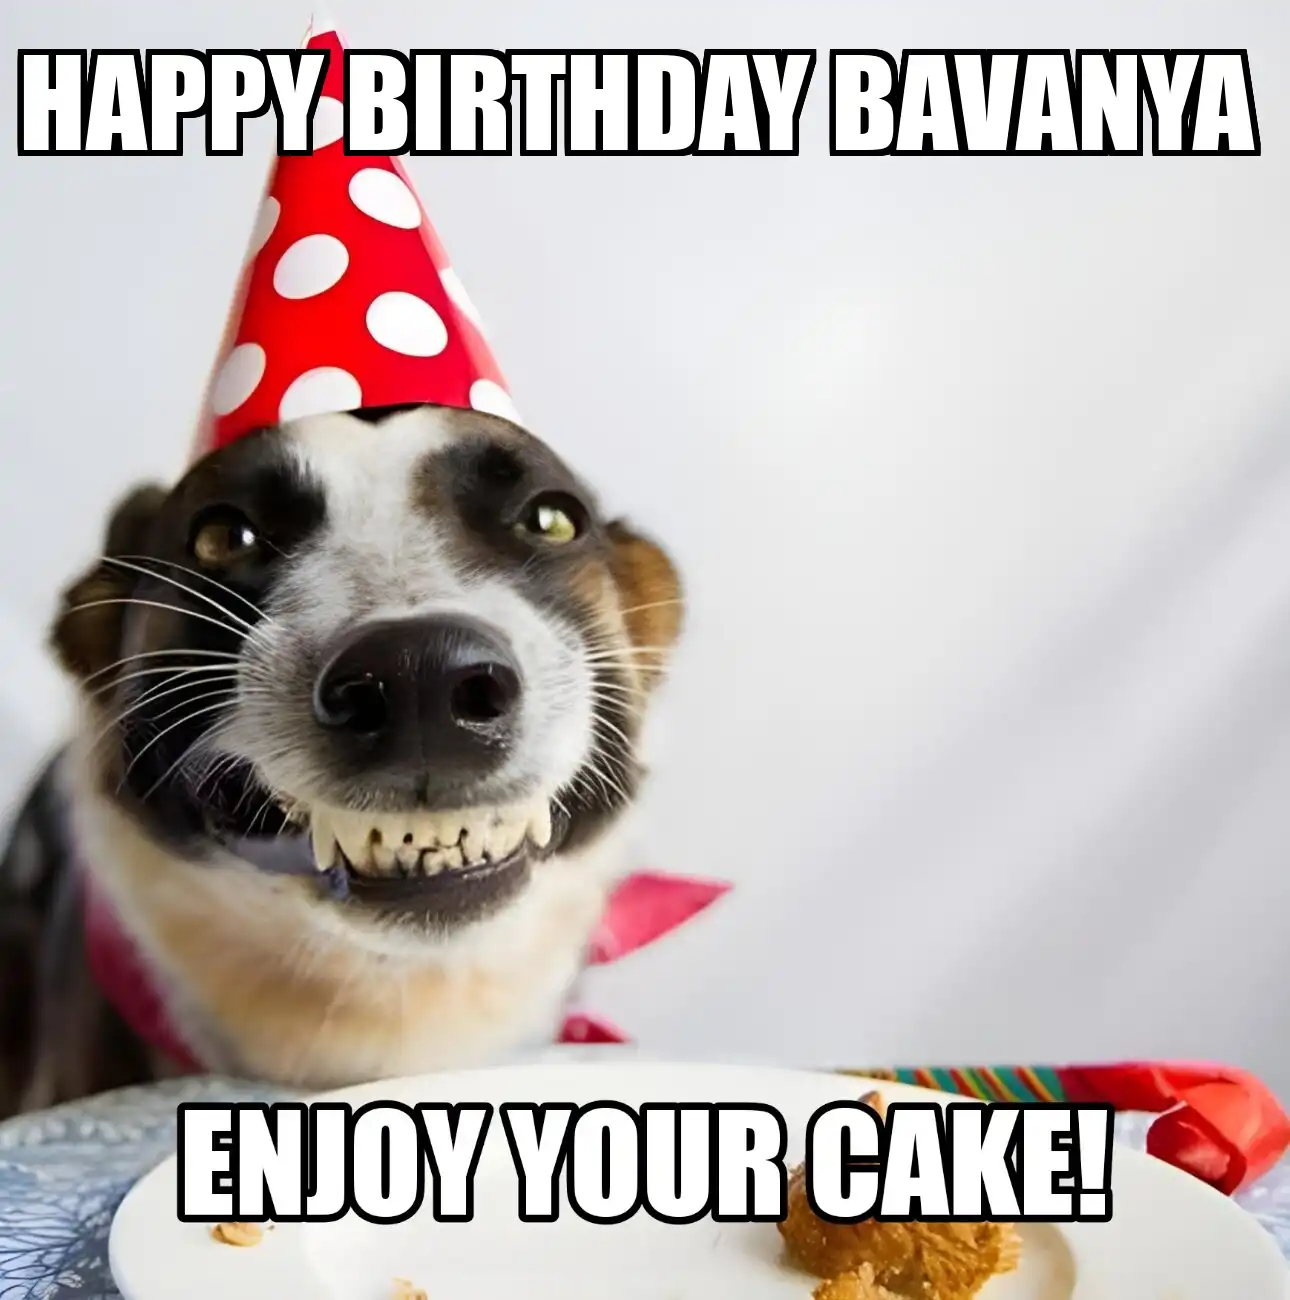 Happy Birthday Bavanya Enjoy Your Cake Dog Meme